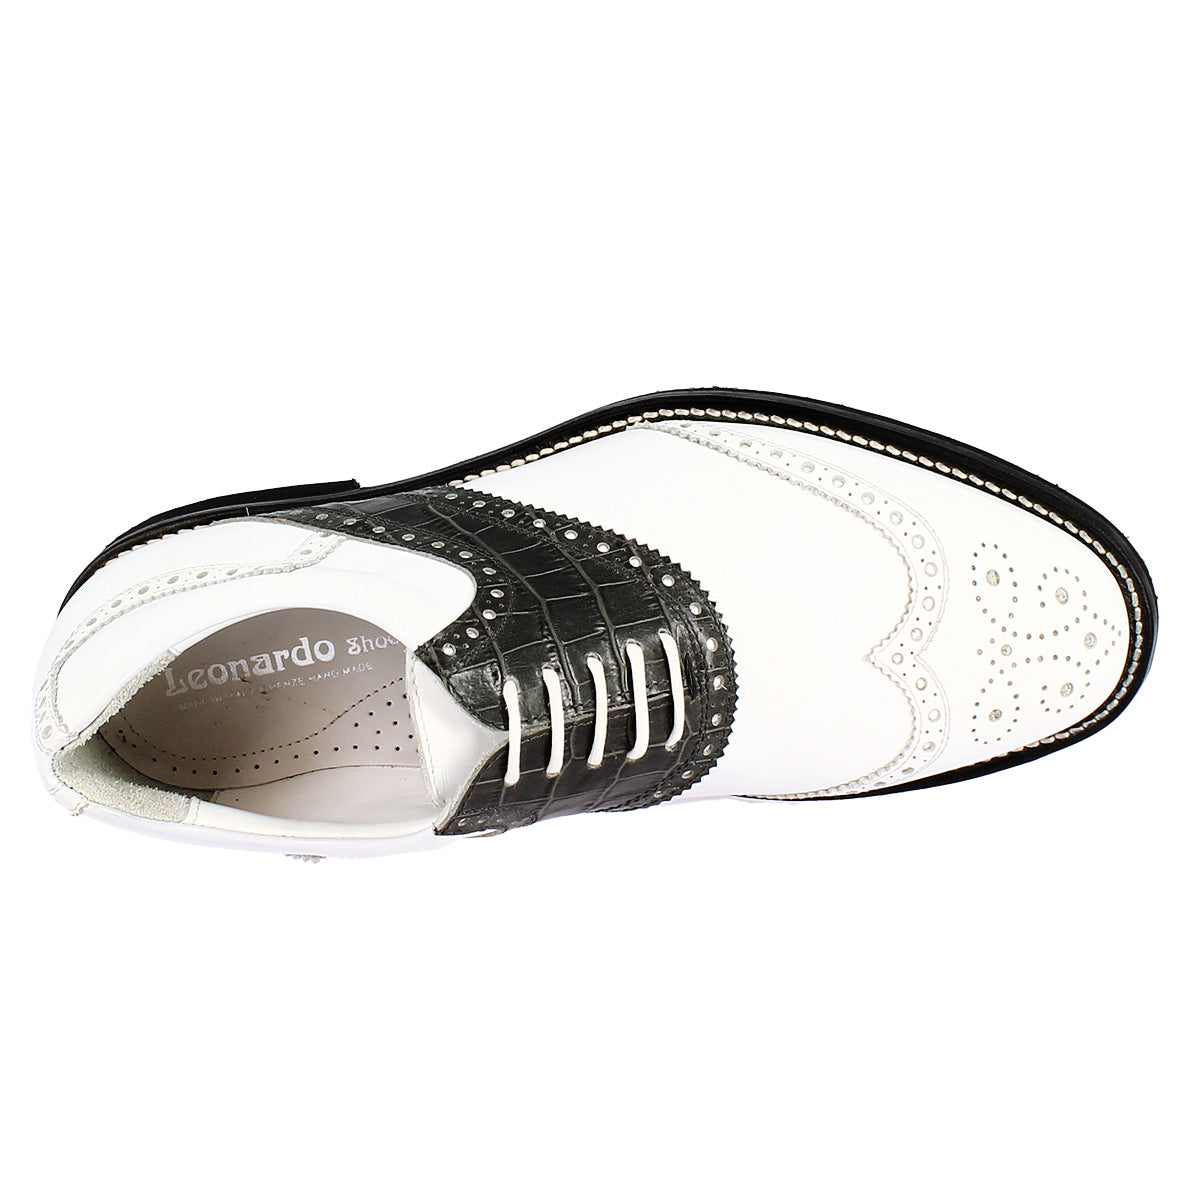 Handgefertigte Herren-Golfschuhe aus schwarz-weißem Vollnarbenleder